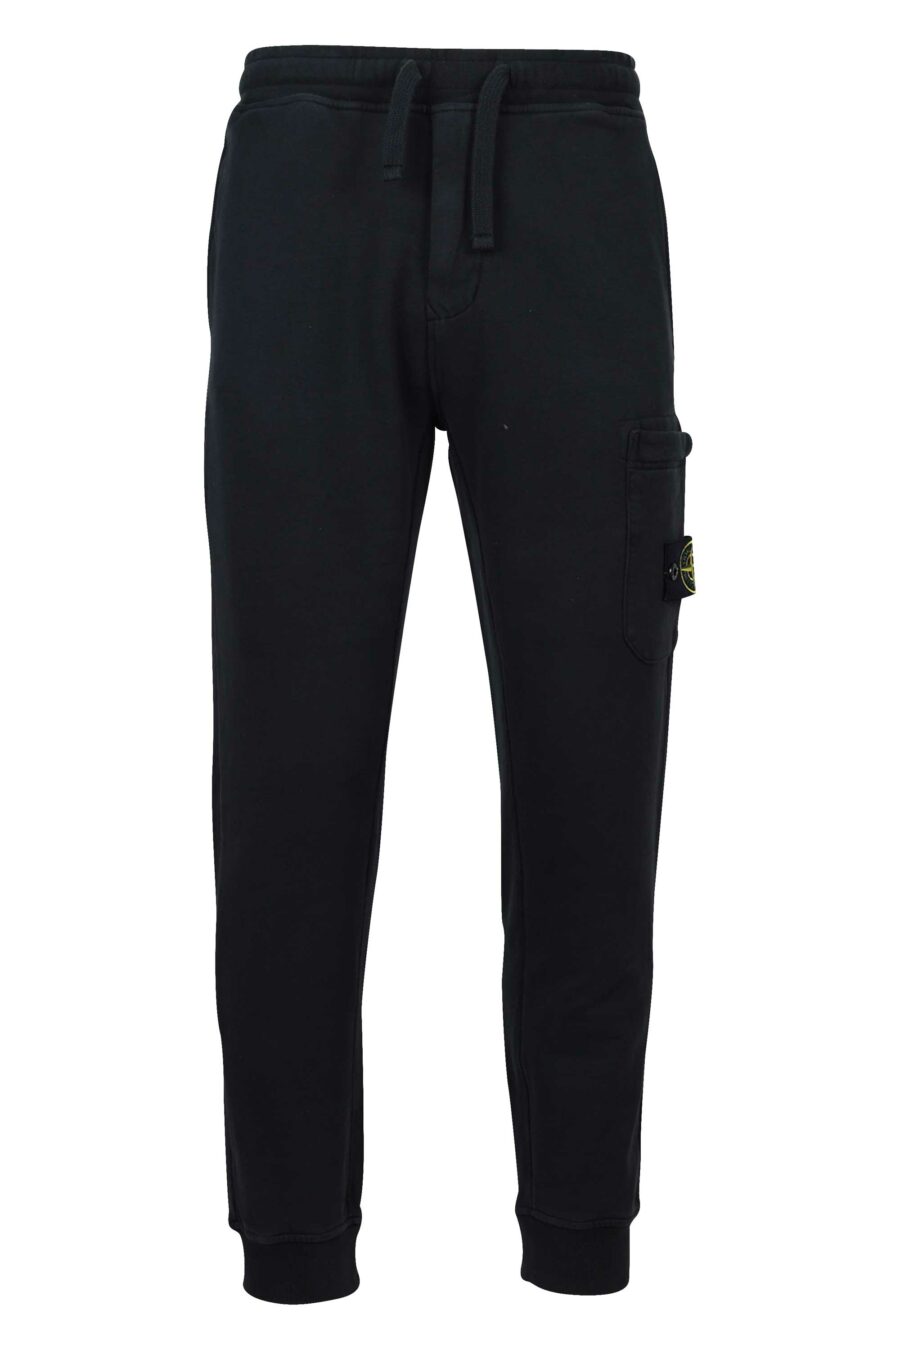 Pantalón de chándal negro con logo lateral parche - 8052572720062